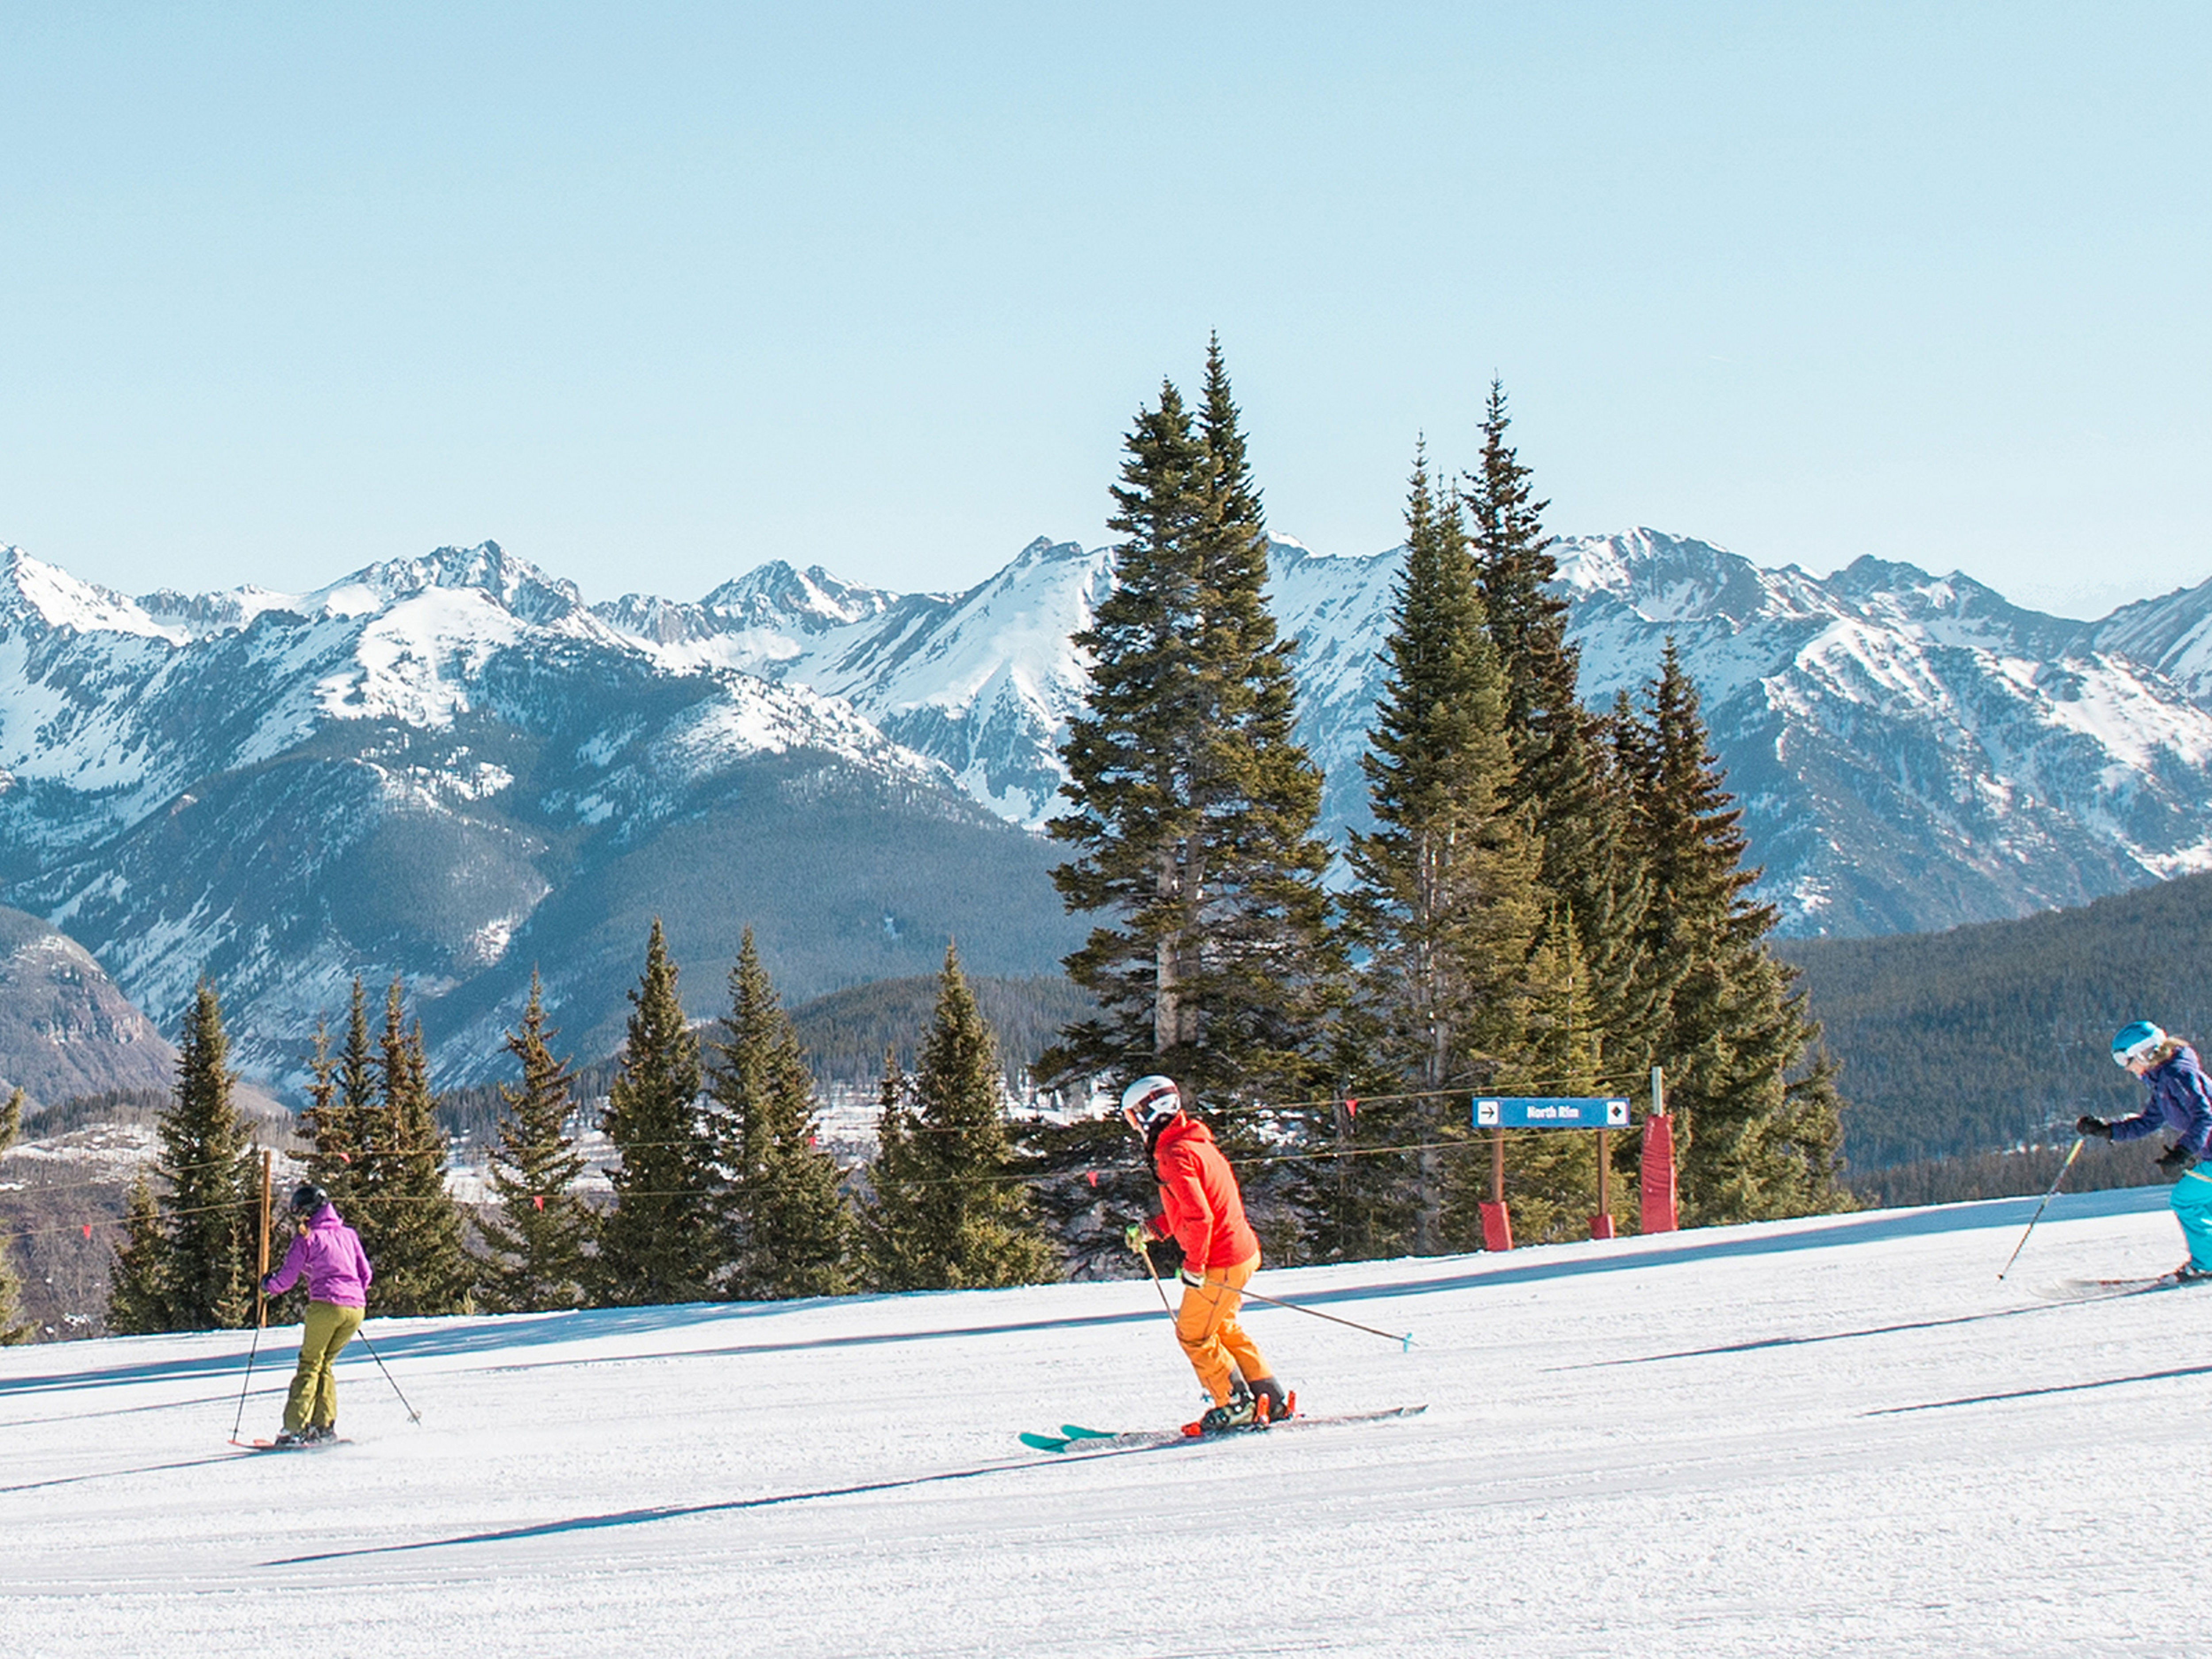 Colorado's Ski Season - When to Plan Your Ski Trip